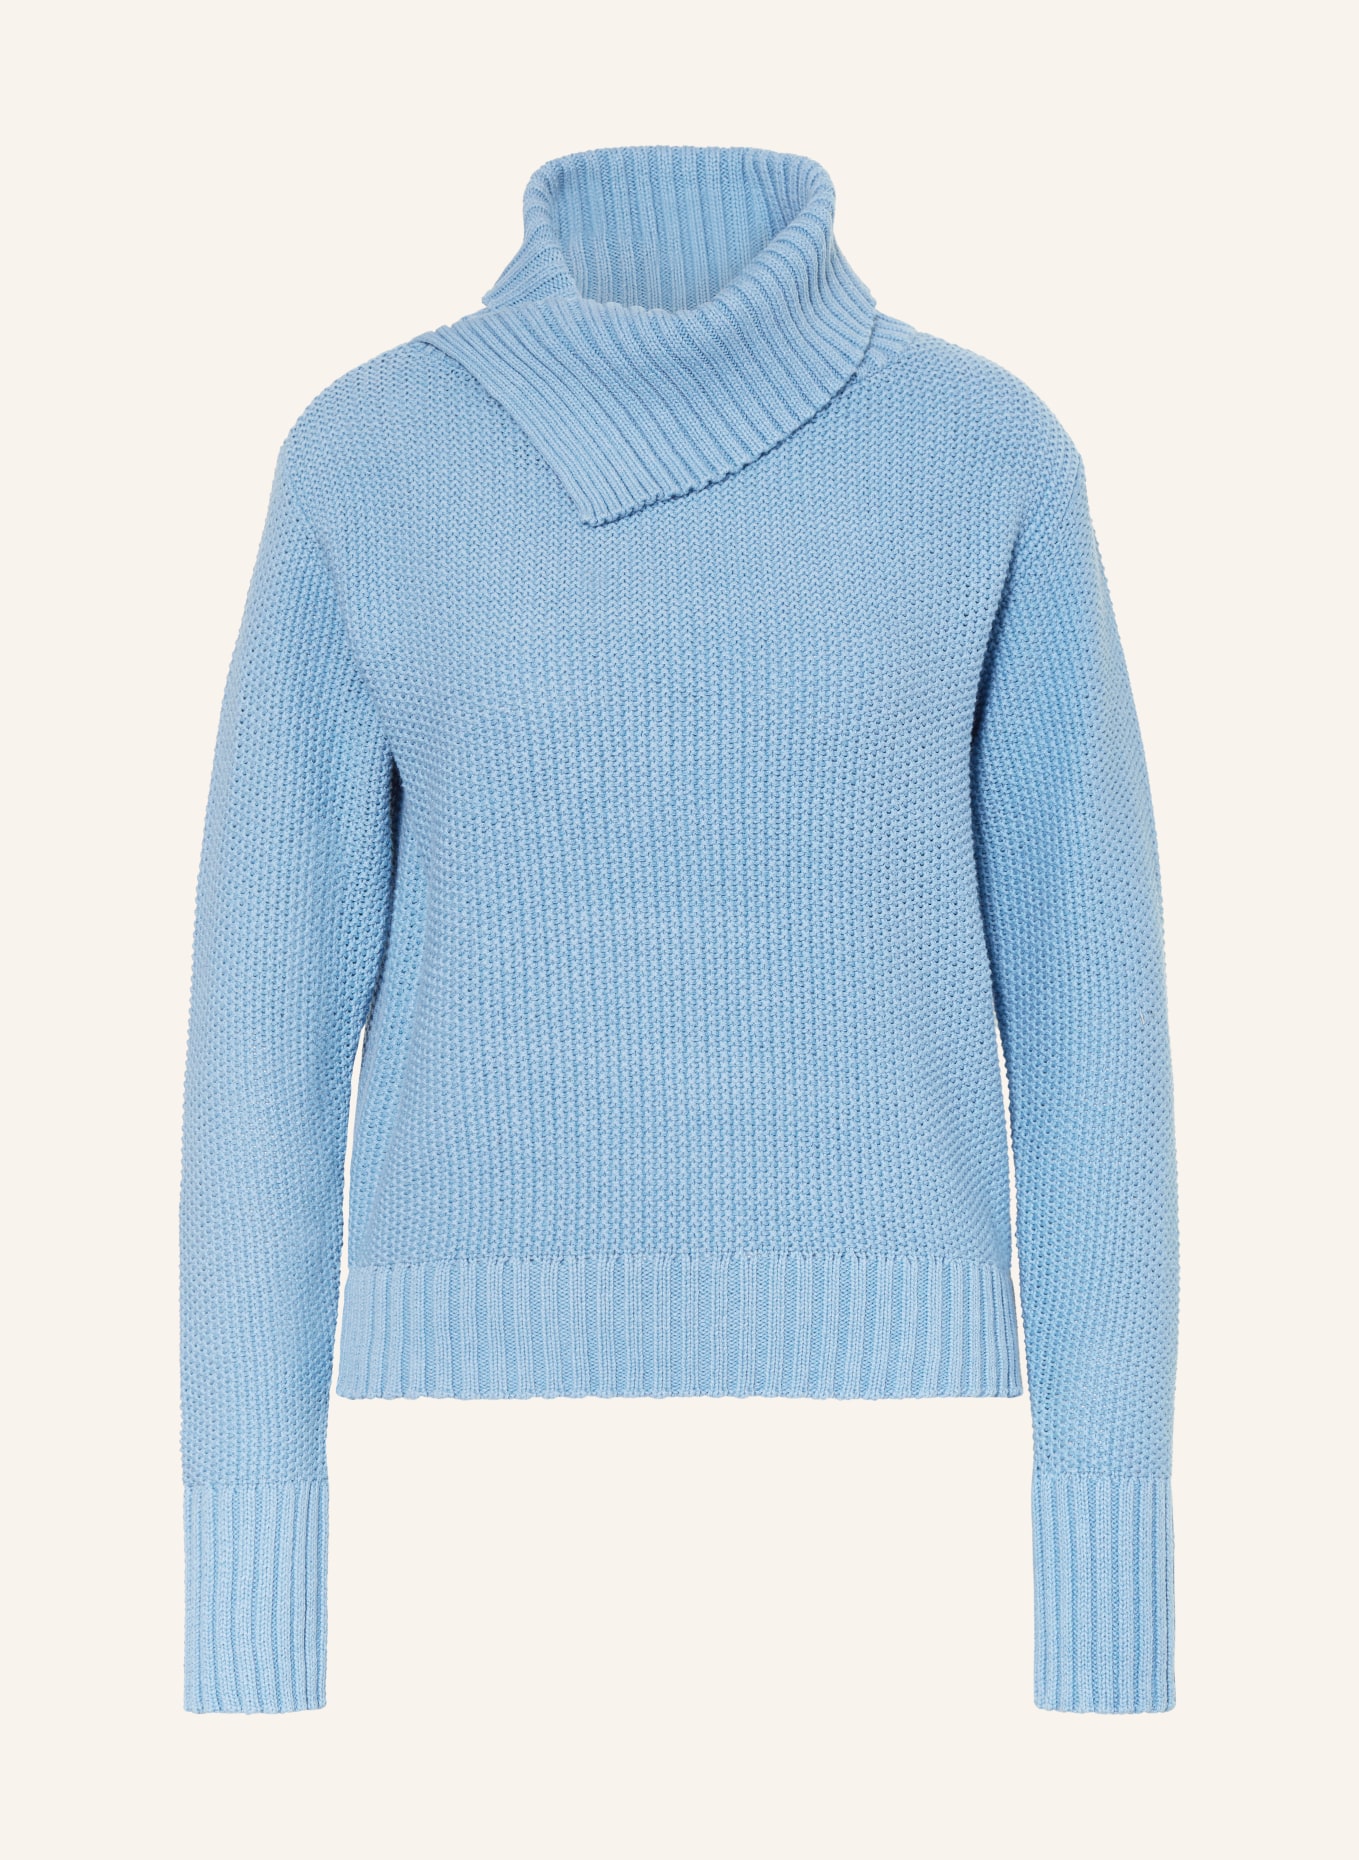 monari Turtleneck sweater, Color: LIGHT BLUE (Image 1)